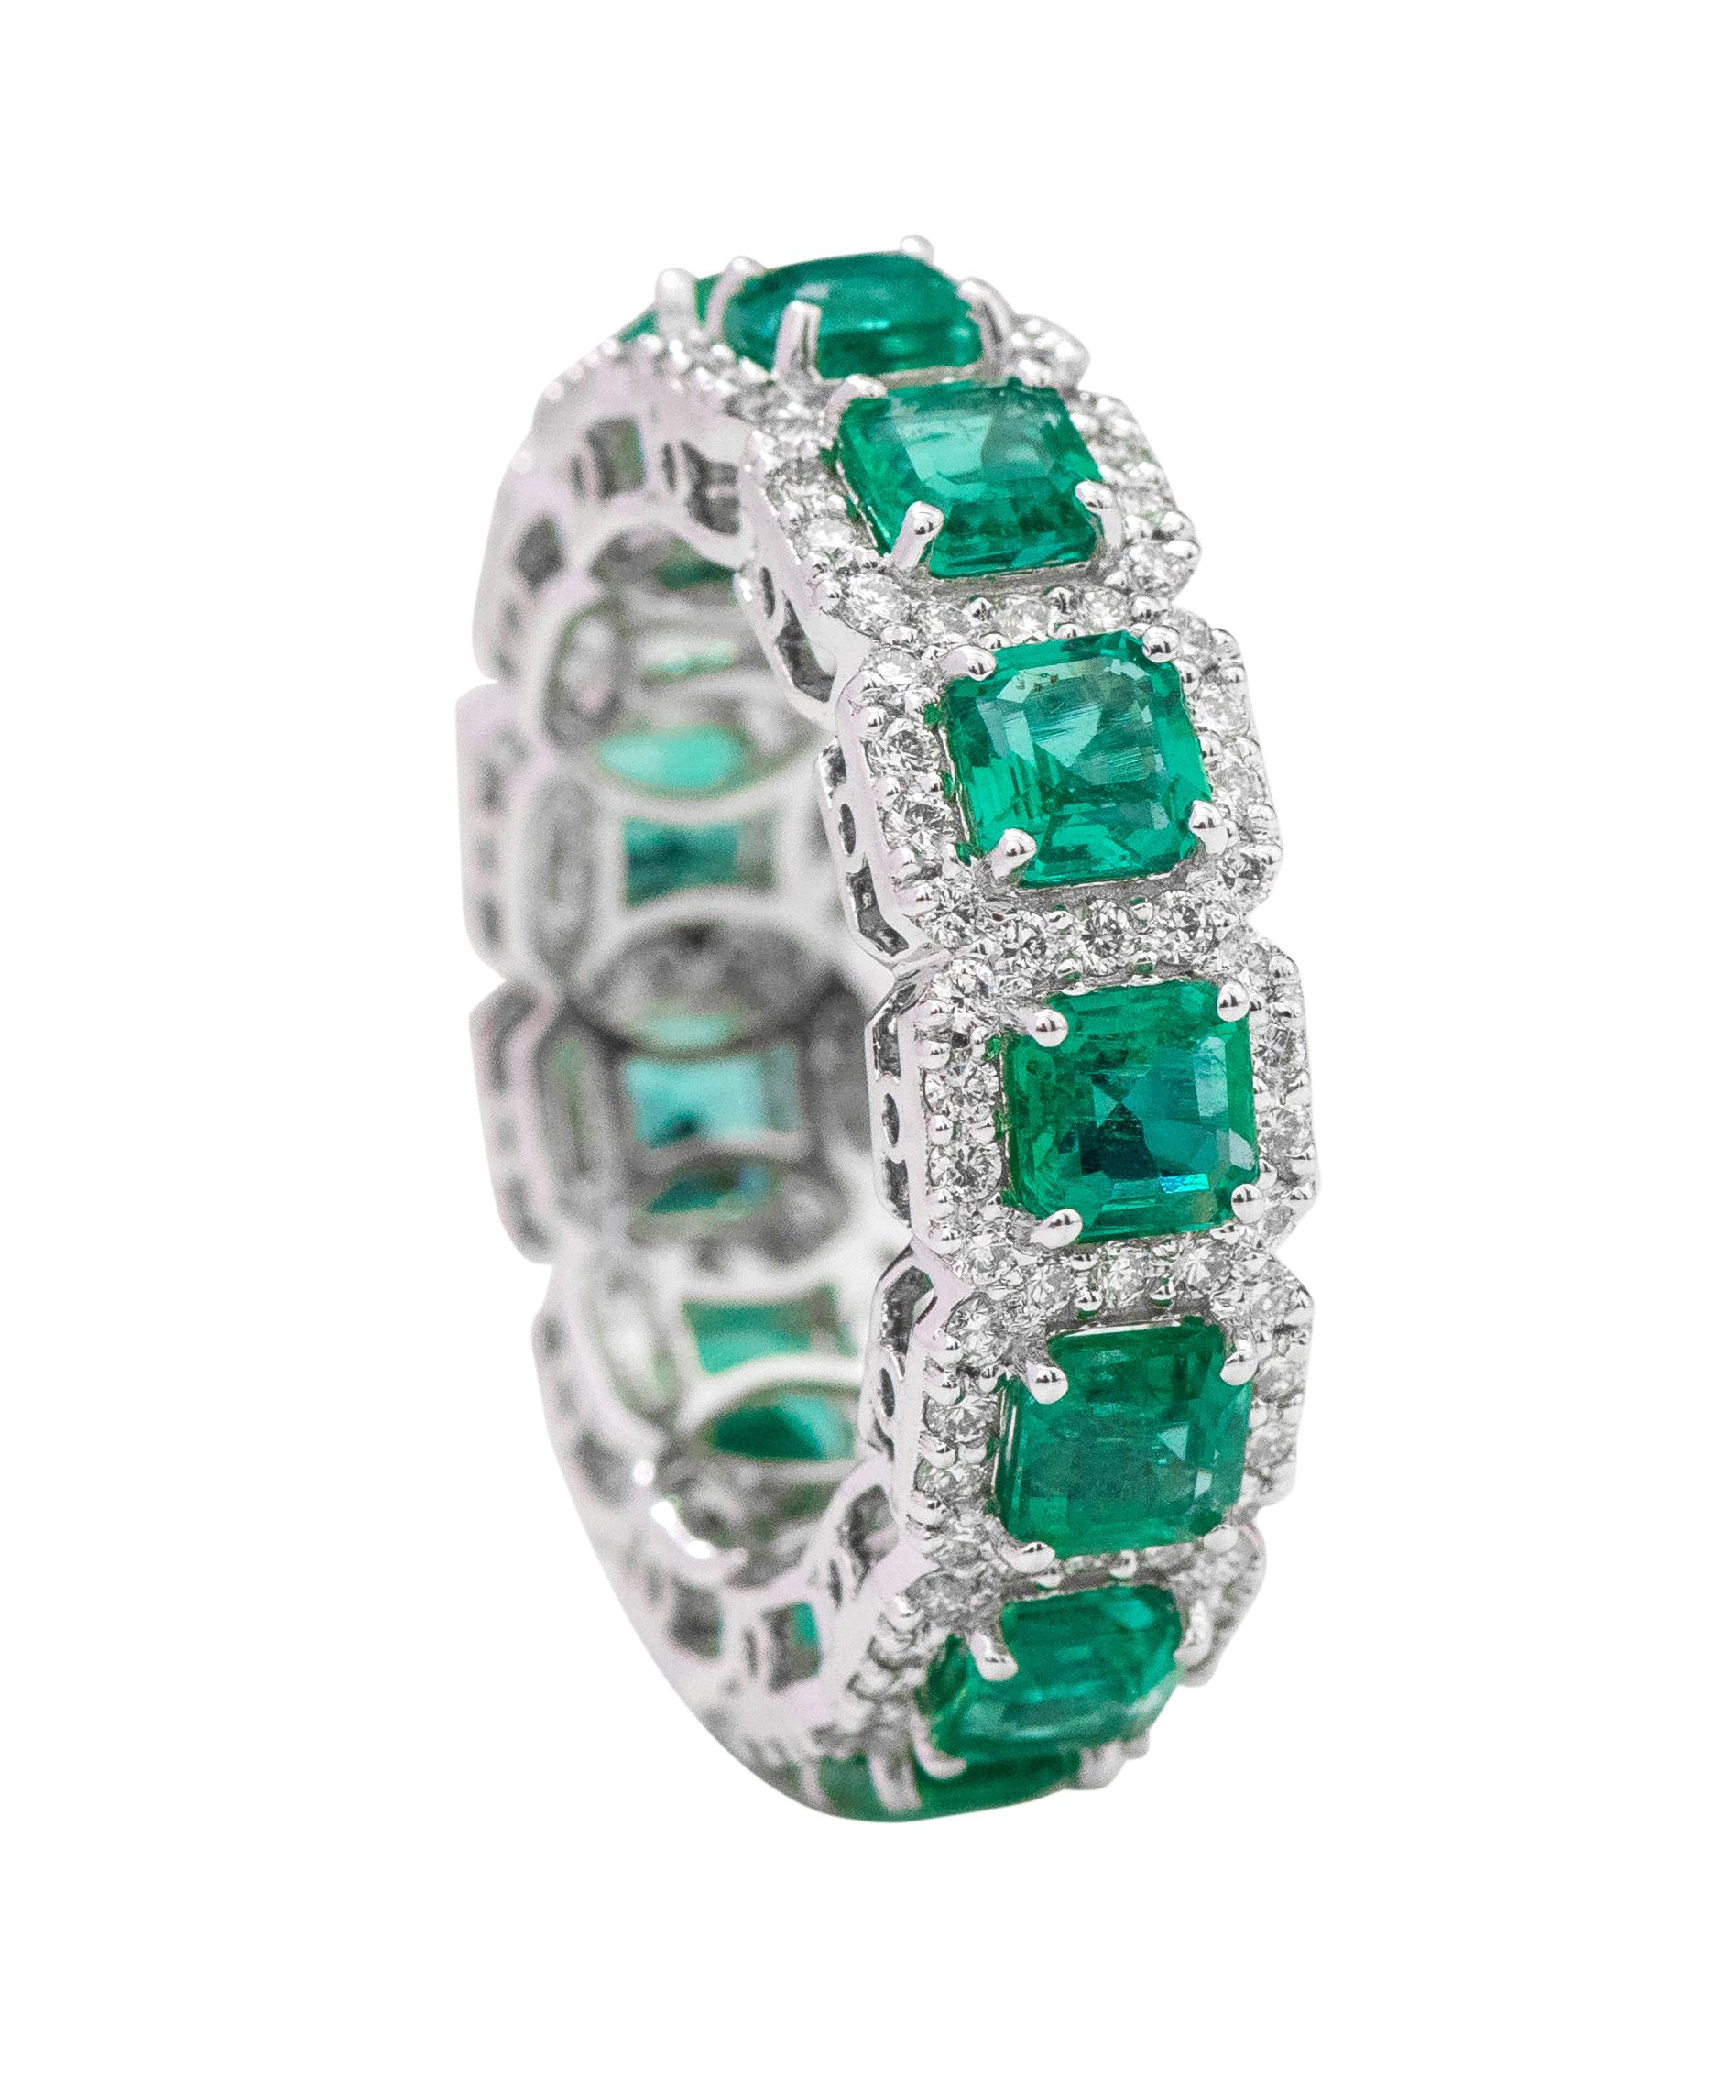 18 Karat Weißgold 4,12 Karat Smaragd-Schliff Natürlicher Smaragd und Diamant Eternity Band Ring

Dieses meisterhafte Band mit einem üppigen grünen Smaragd und Diamanten ist bemerkenswert brillant. Die Smaragde im Solitär-Schliff sind von einer